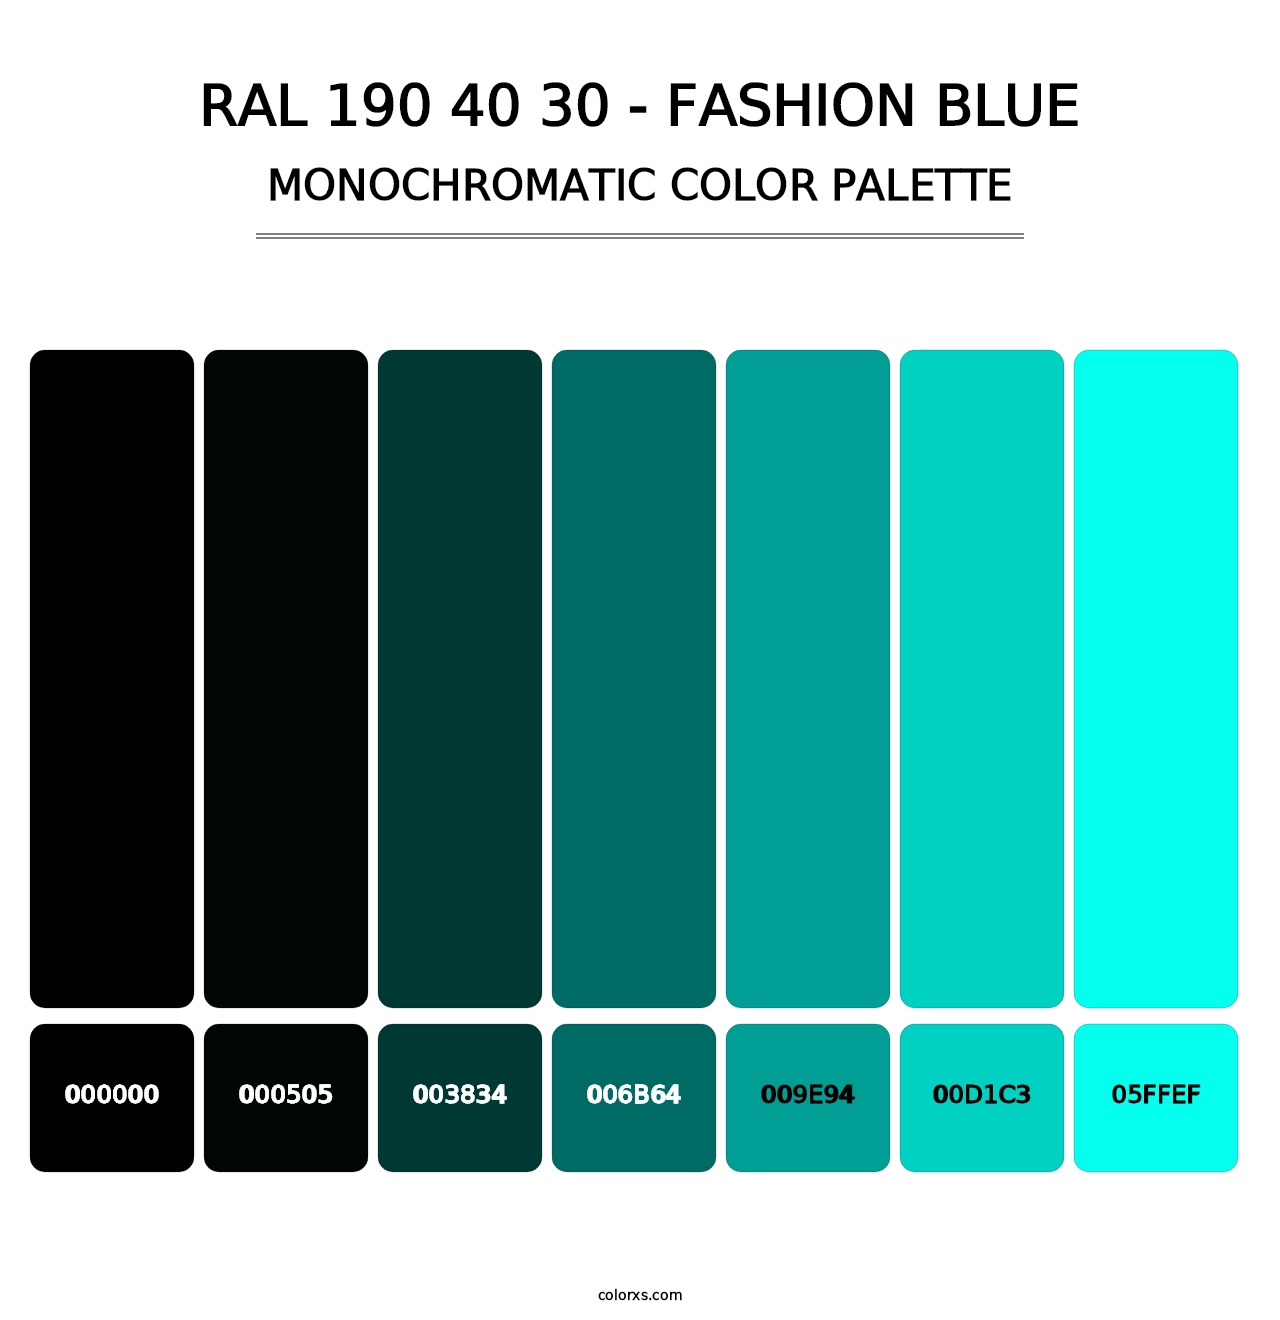 RAL 190 40 30 - Fashion Blue - Monochromatic Color Palette